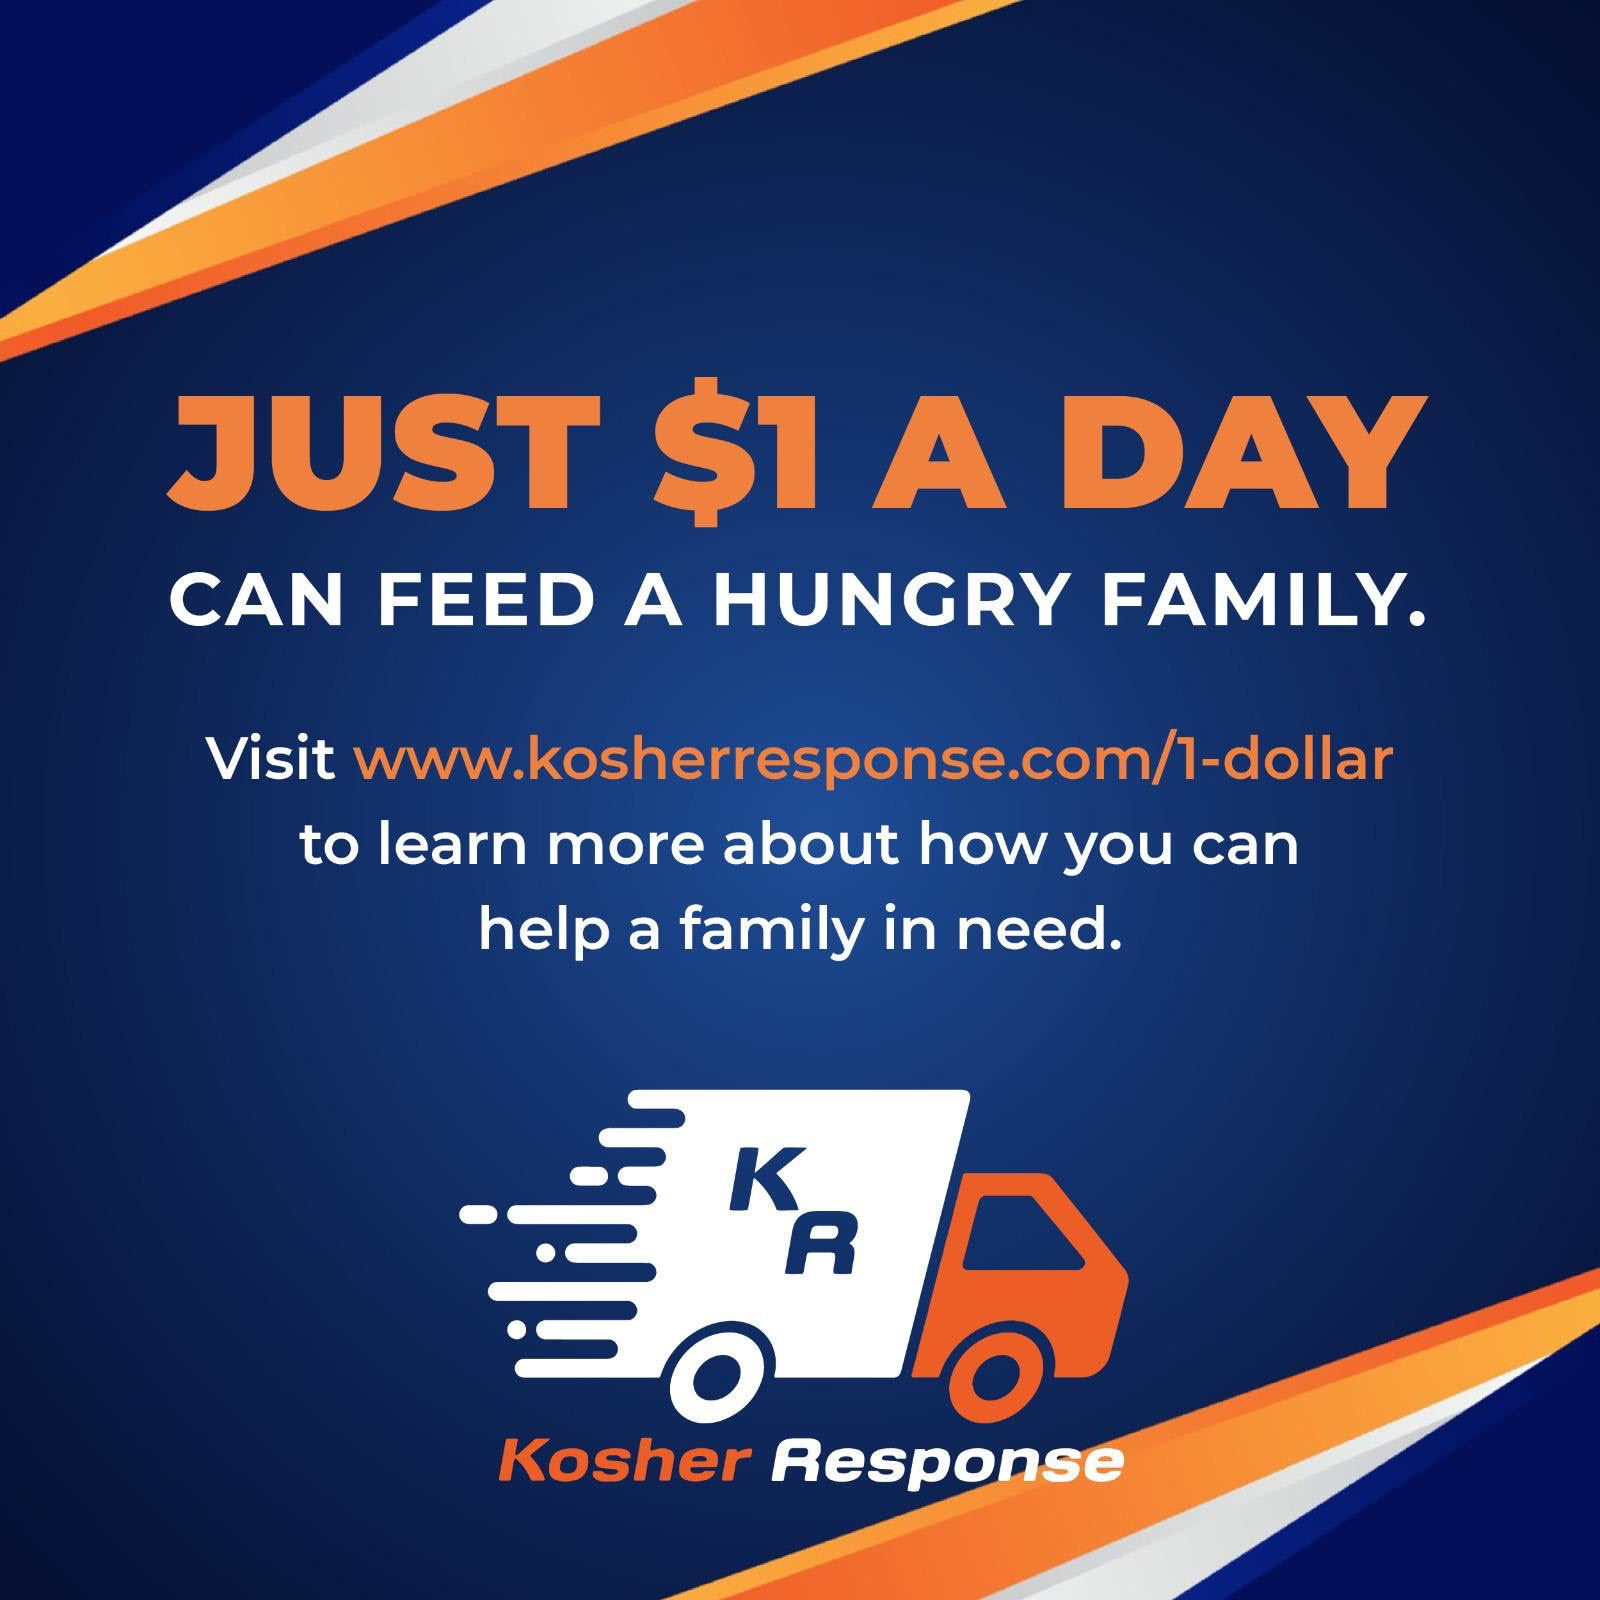 Kosher Response’s 1 Dollar A Day